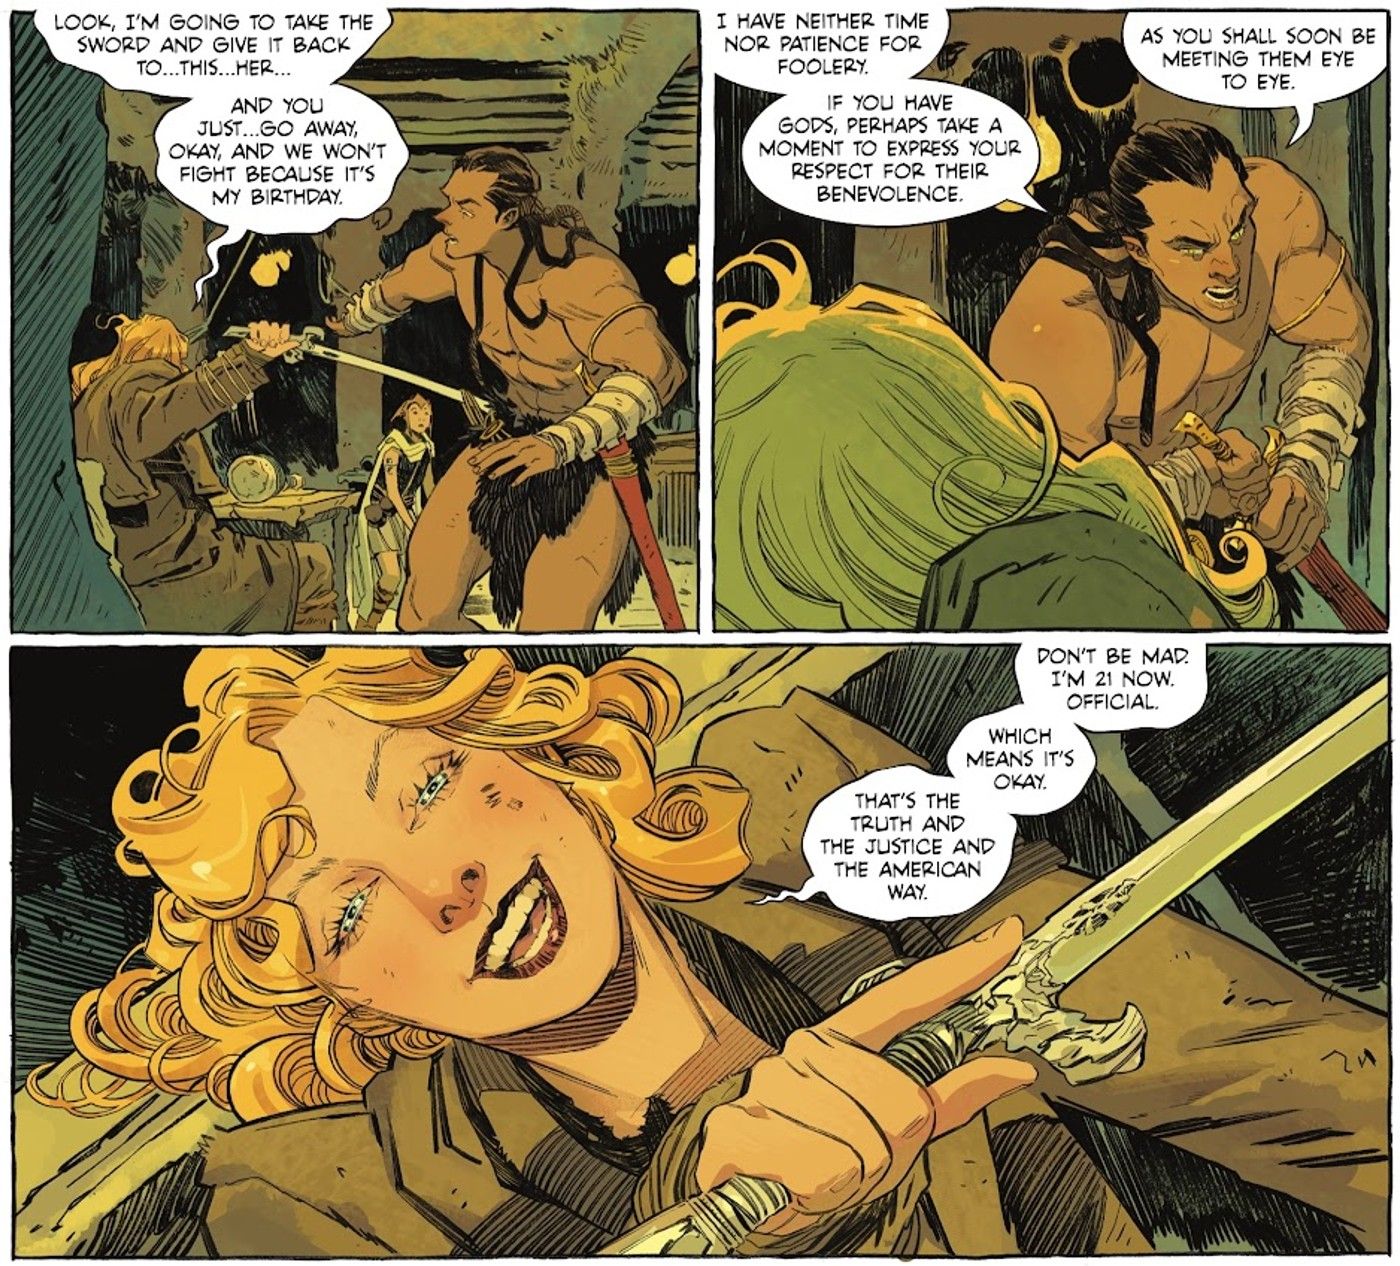 Painéis de quadrinhos: Supergirl bebe em seu aniversário de 21 anos em um bar alienígena.